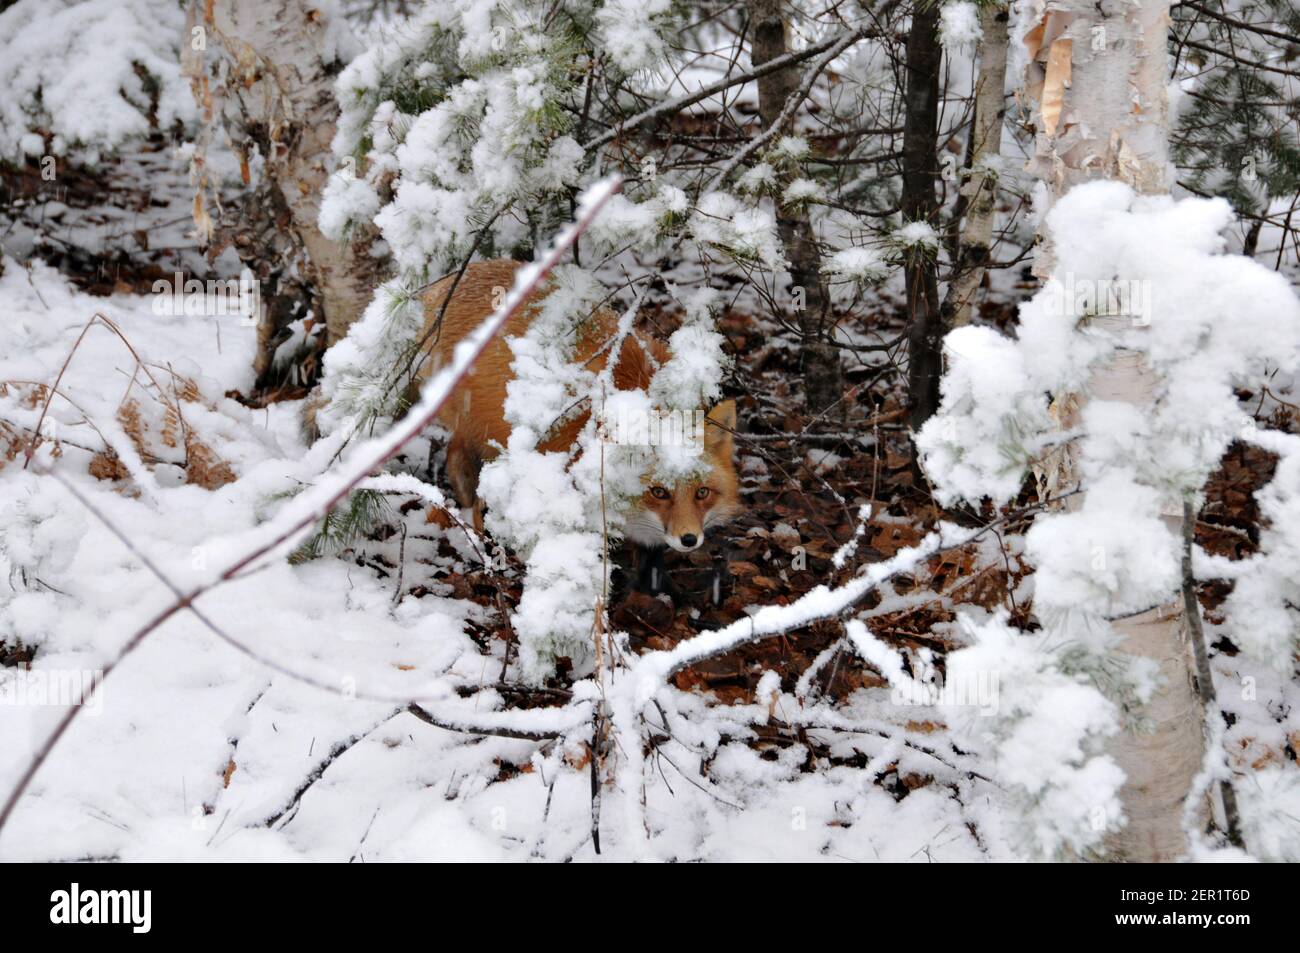 Foto d'archivio di Red Fox. Immagine FOX. Immagine. Verticale. Fox guardando attraverso alberi coperti di neve nella stagione invernale nel suo habitat e ambiente. Foto Stock